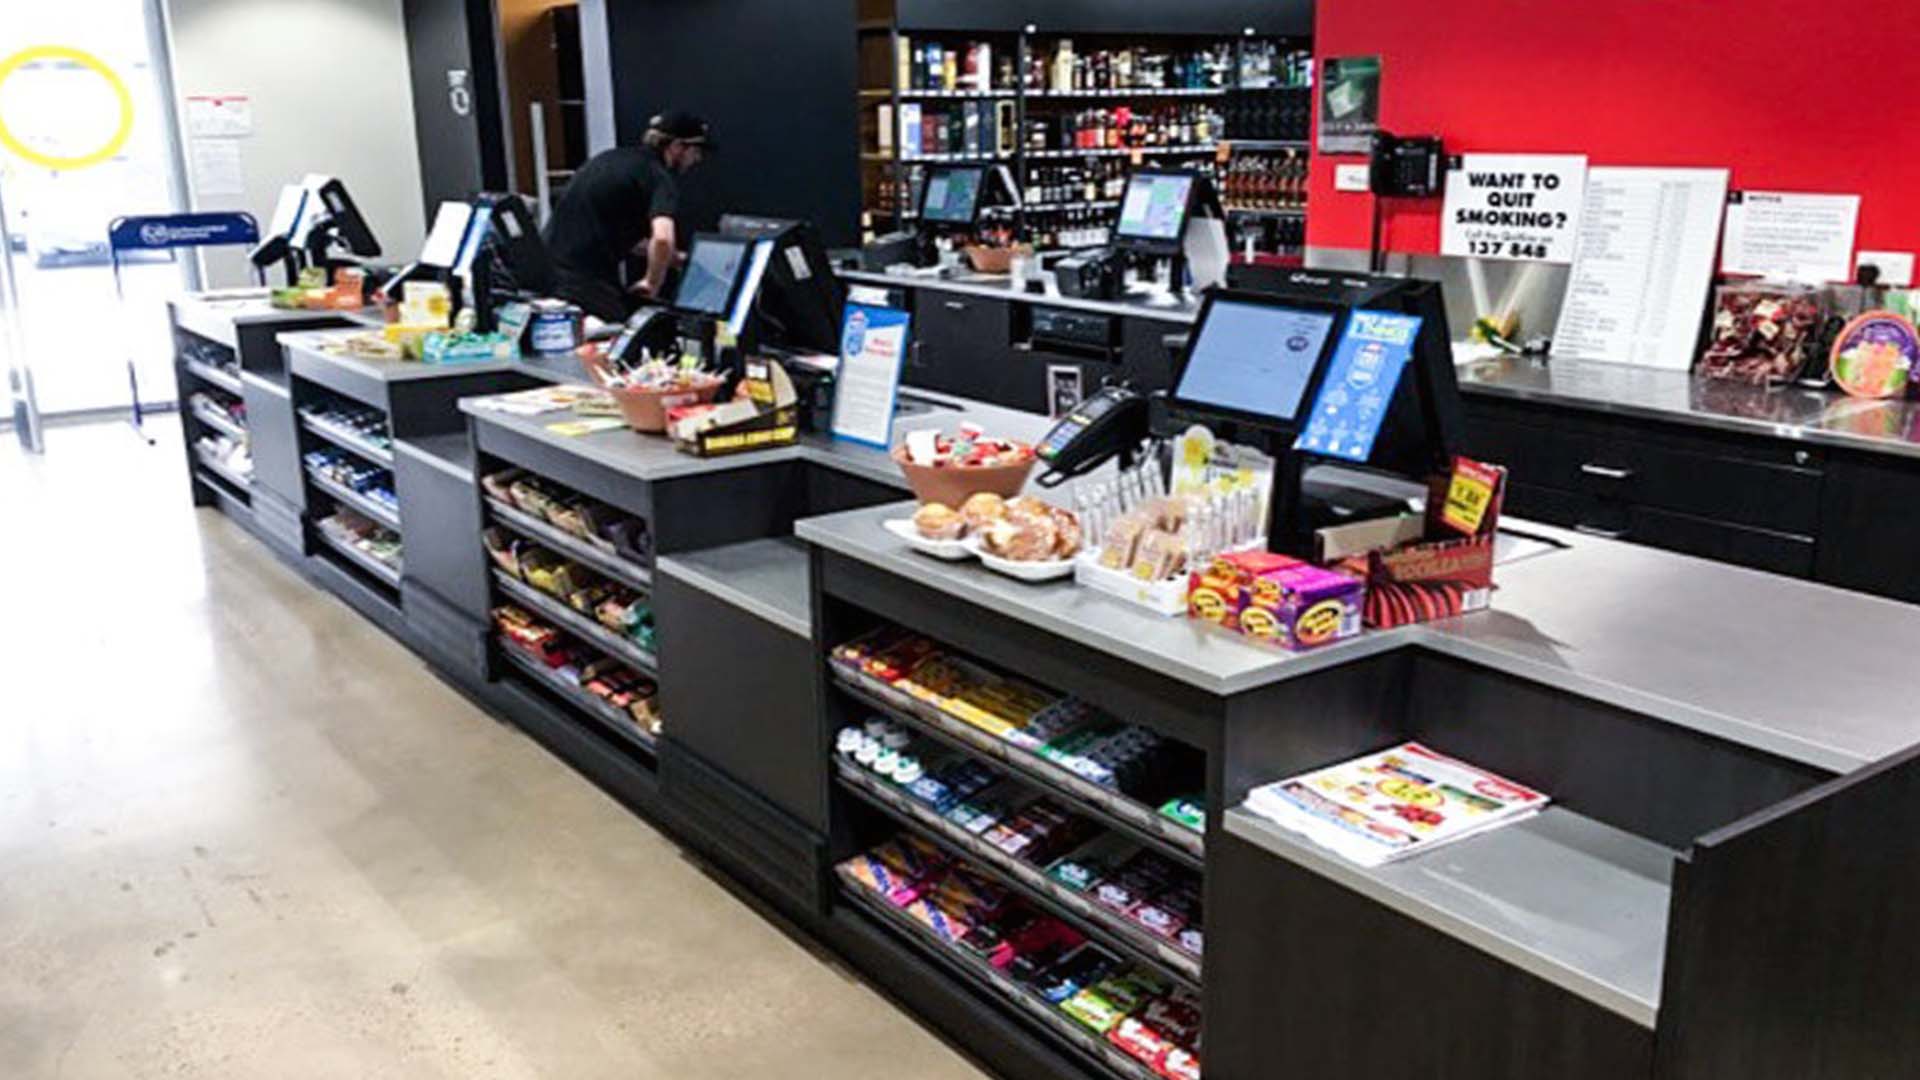 Checkout Counter 101 | Lane Industries | Shopfitting Perth WA